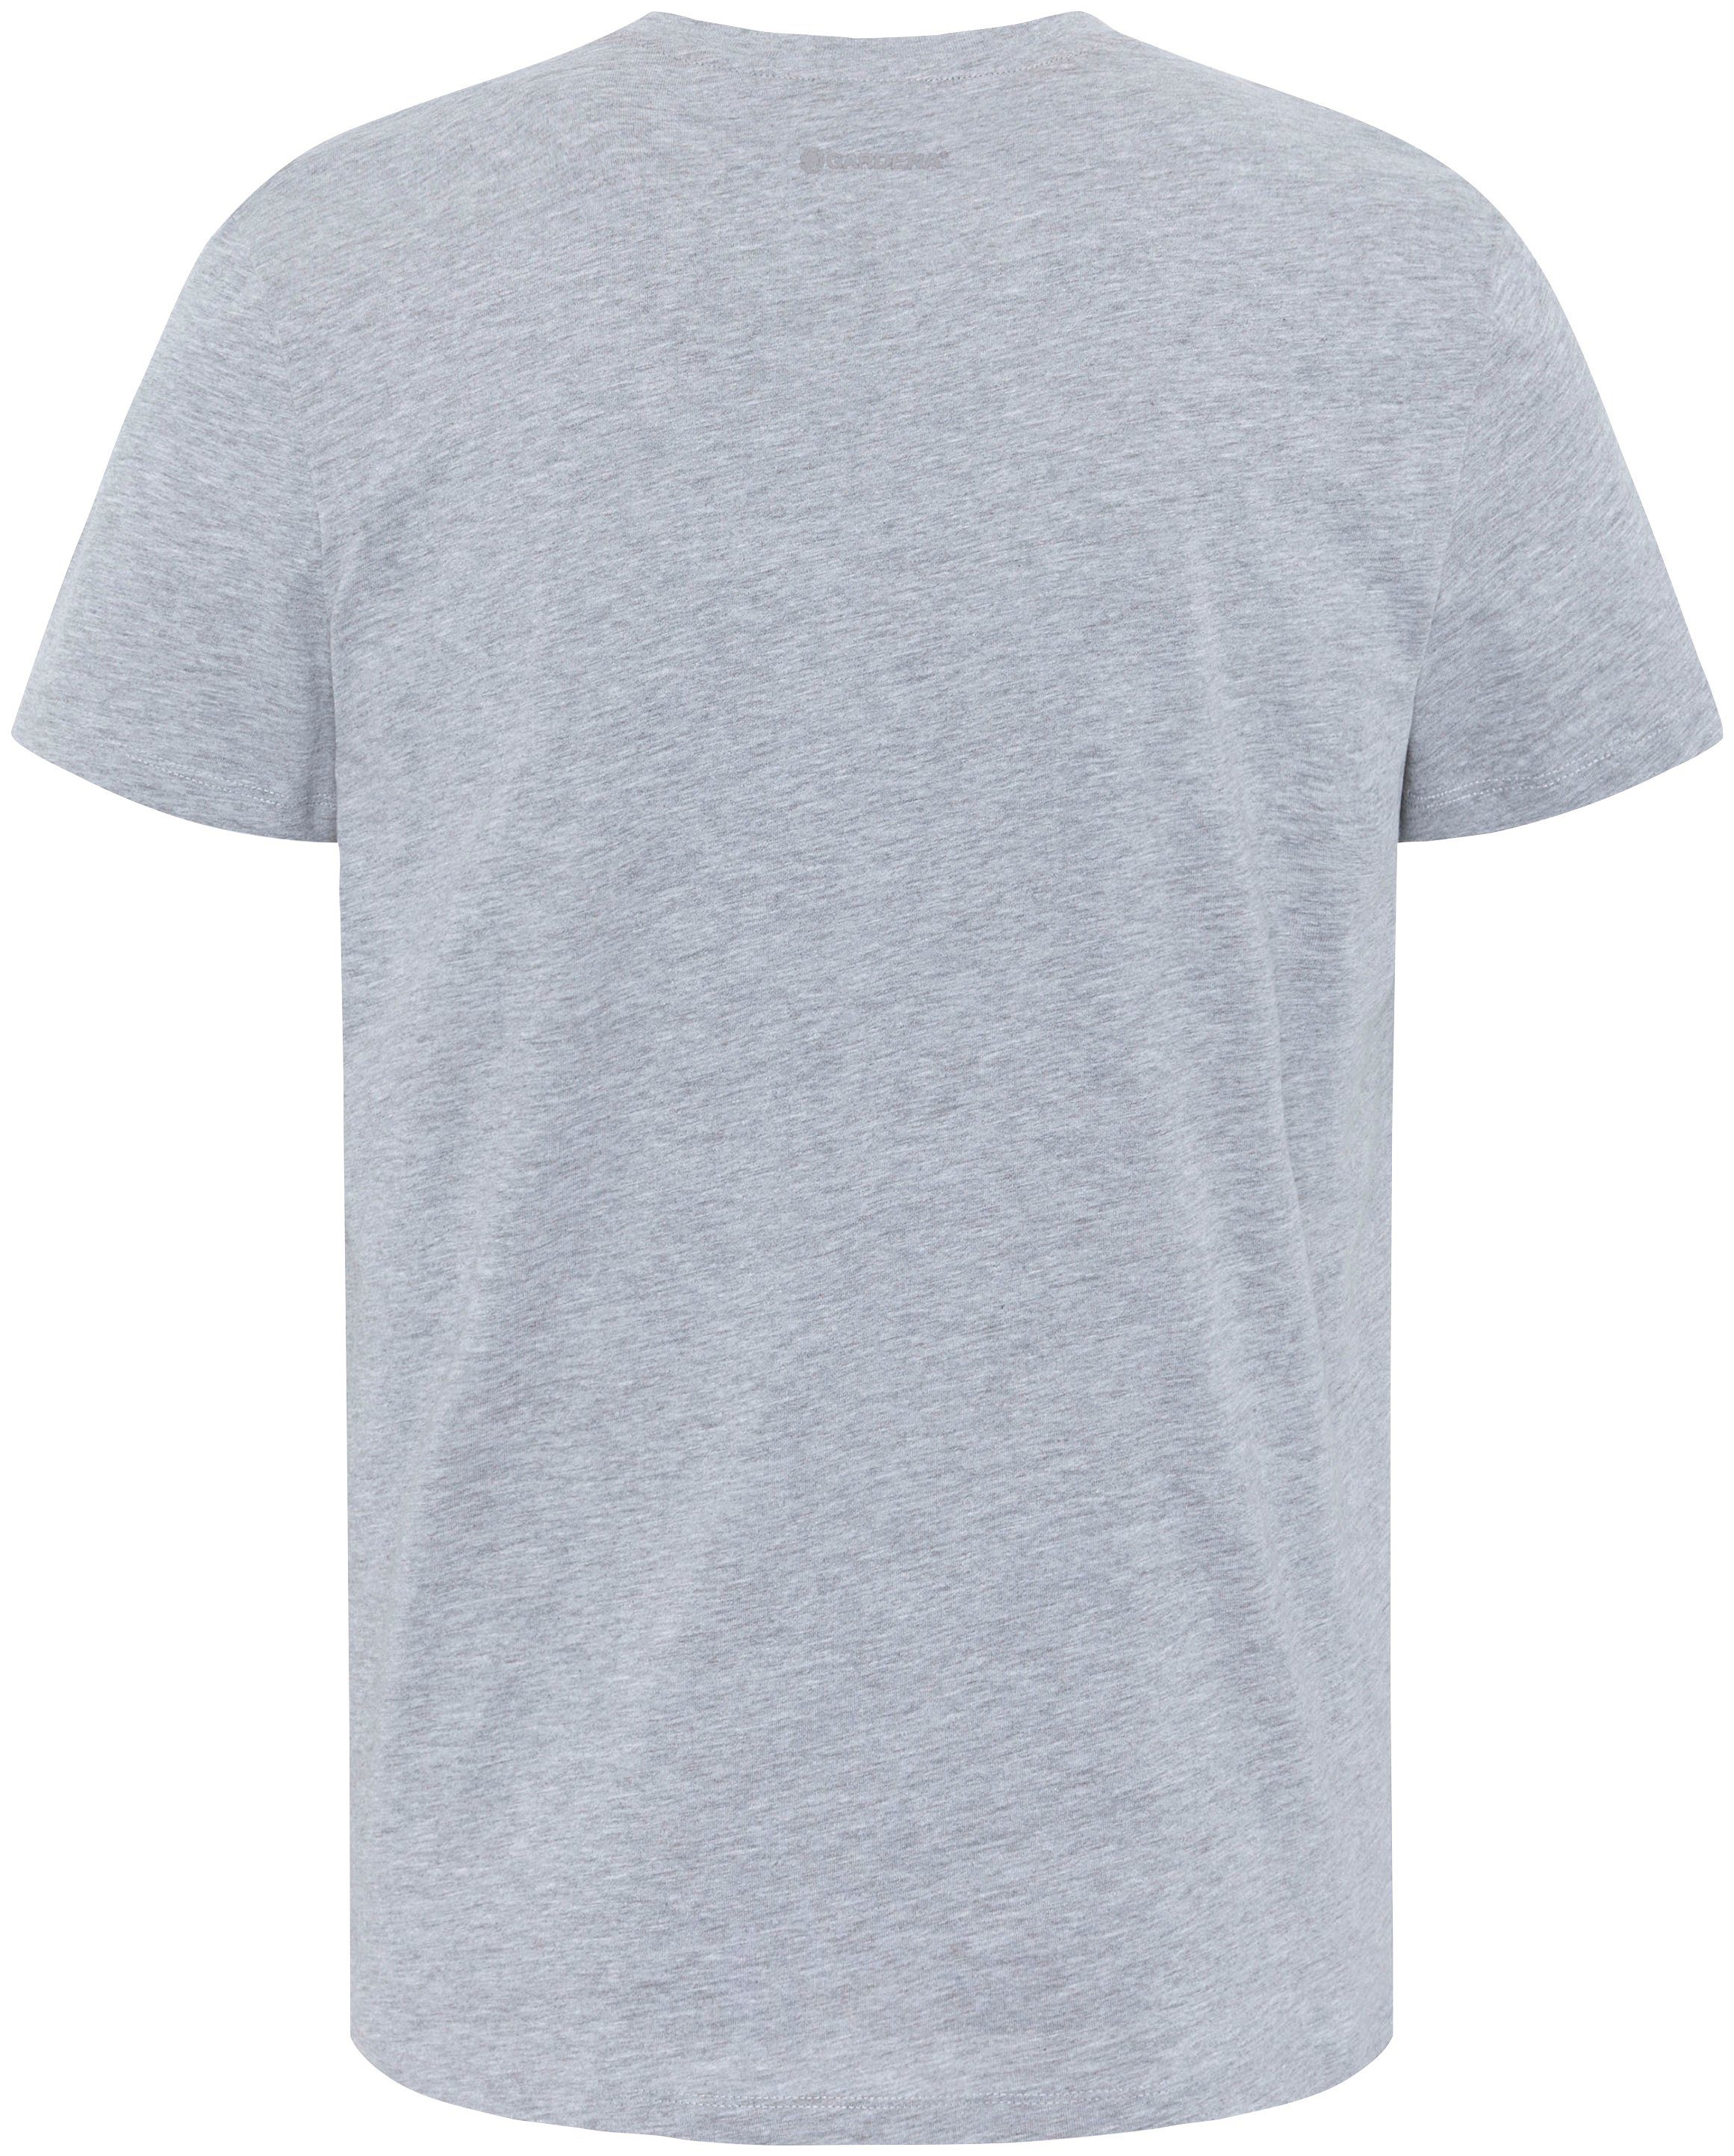 Aufdruck Grey Melange GARDENA T-Shirt Light mit